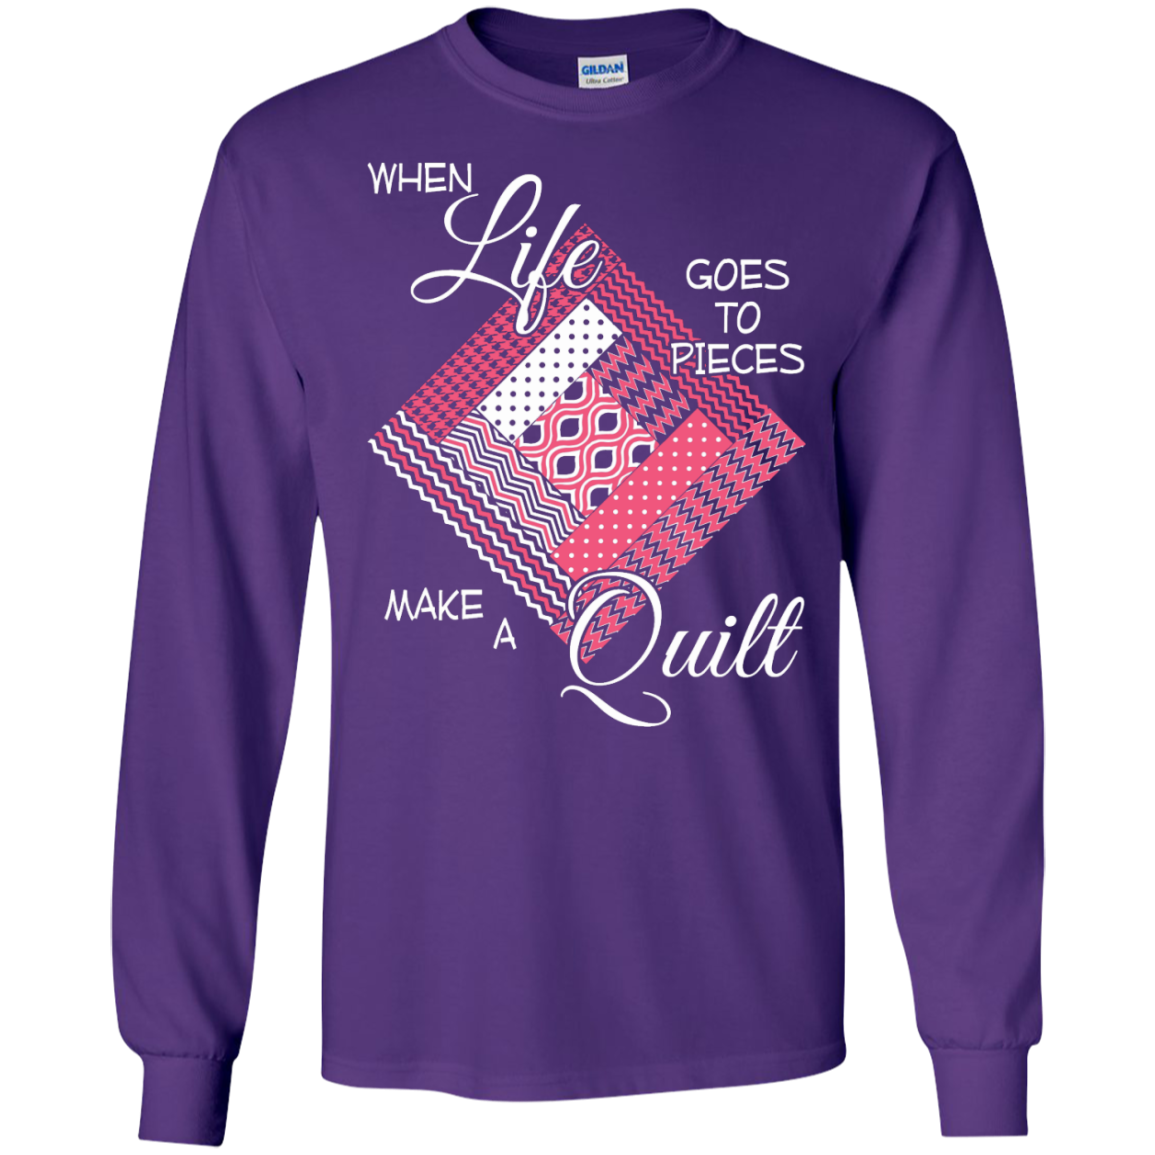 Make a Quilt (pink) Long Sleeve Ultra Cotton T-Shirt - Crafter4Life - 7